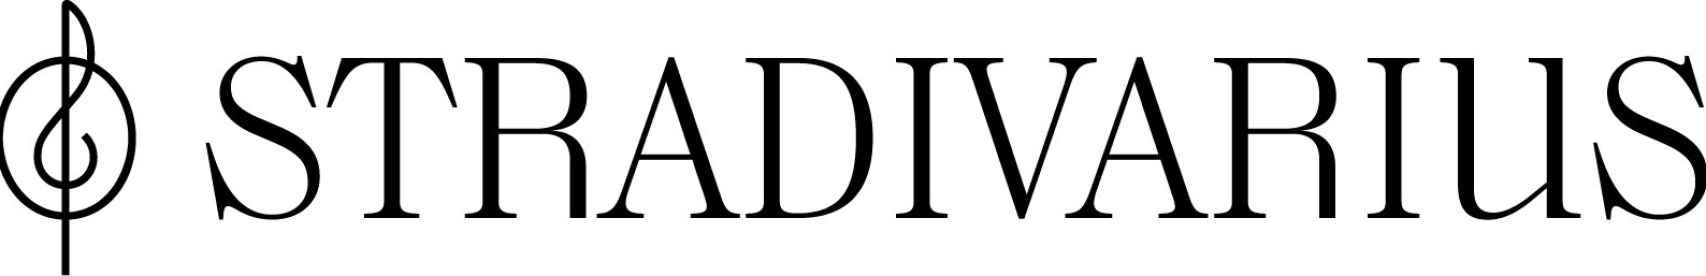 Nuevo logo de Stradivarius